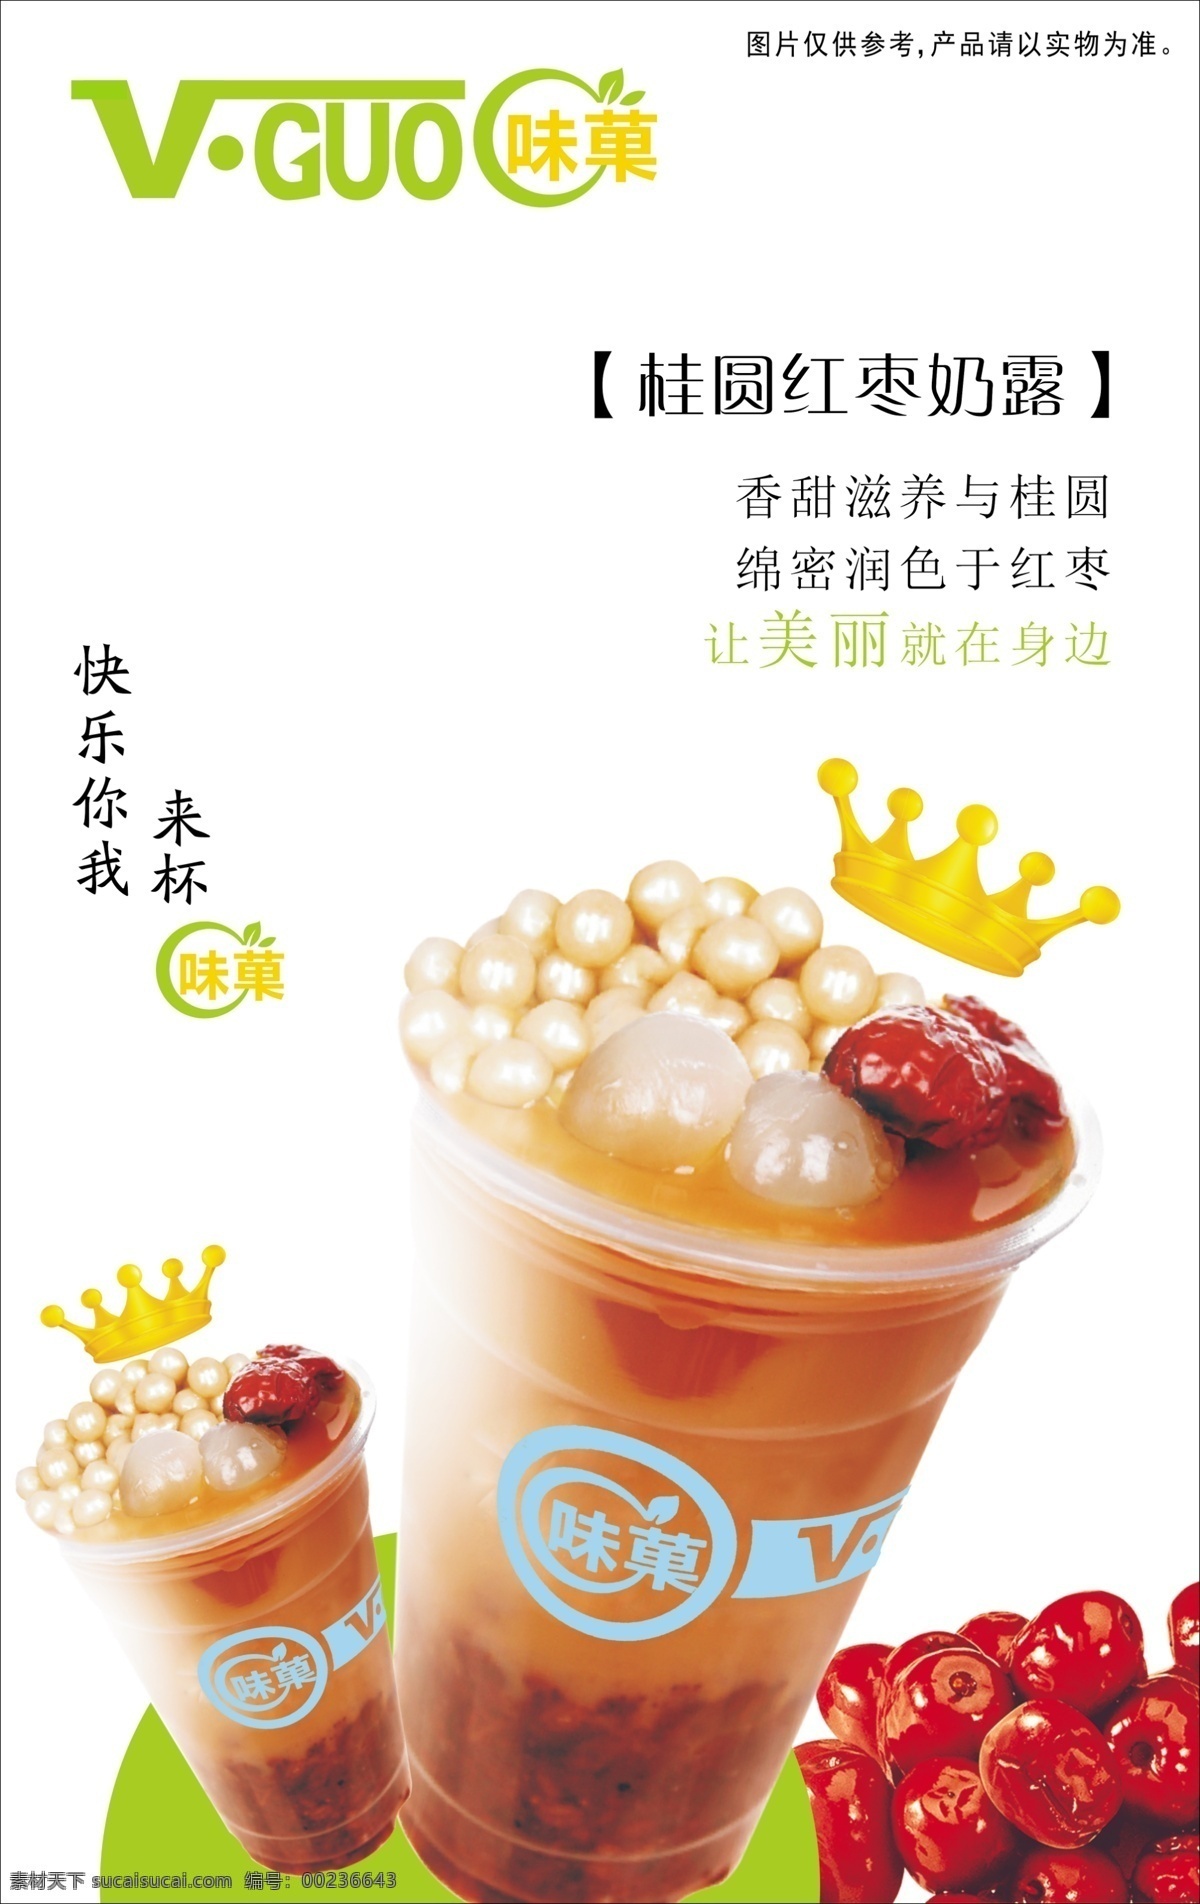 桂圆 红枣 牛奶 宣传单 页 奶露 宣传单页 食物